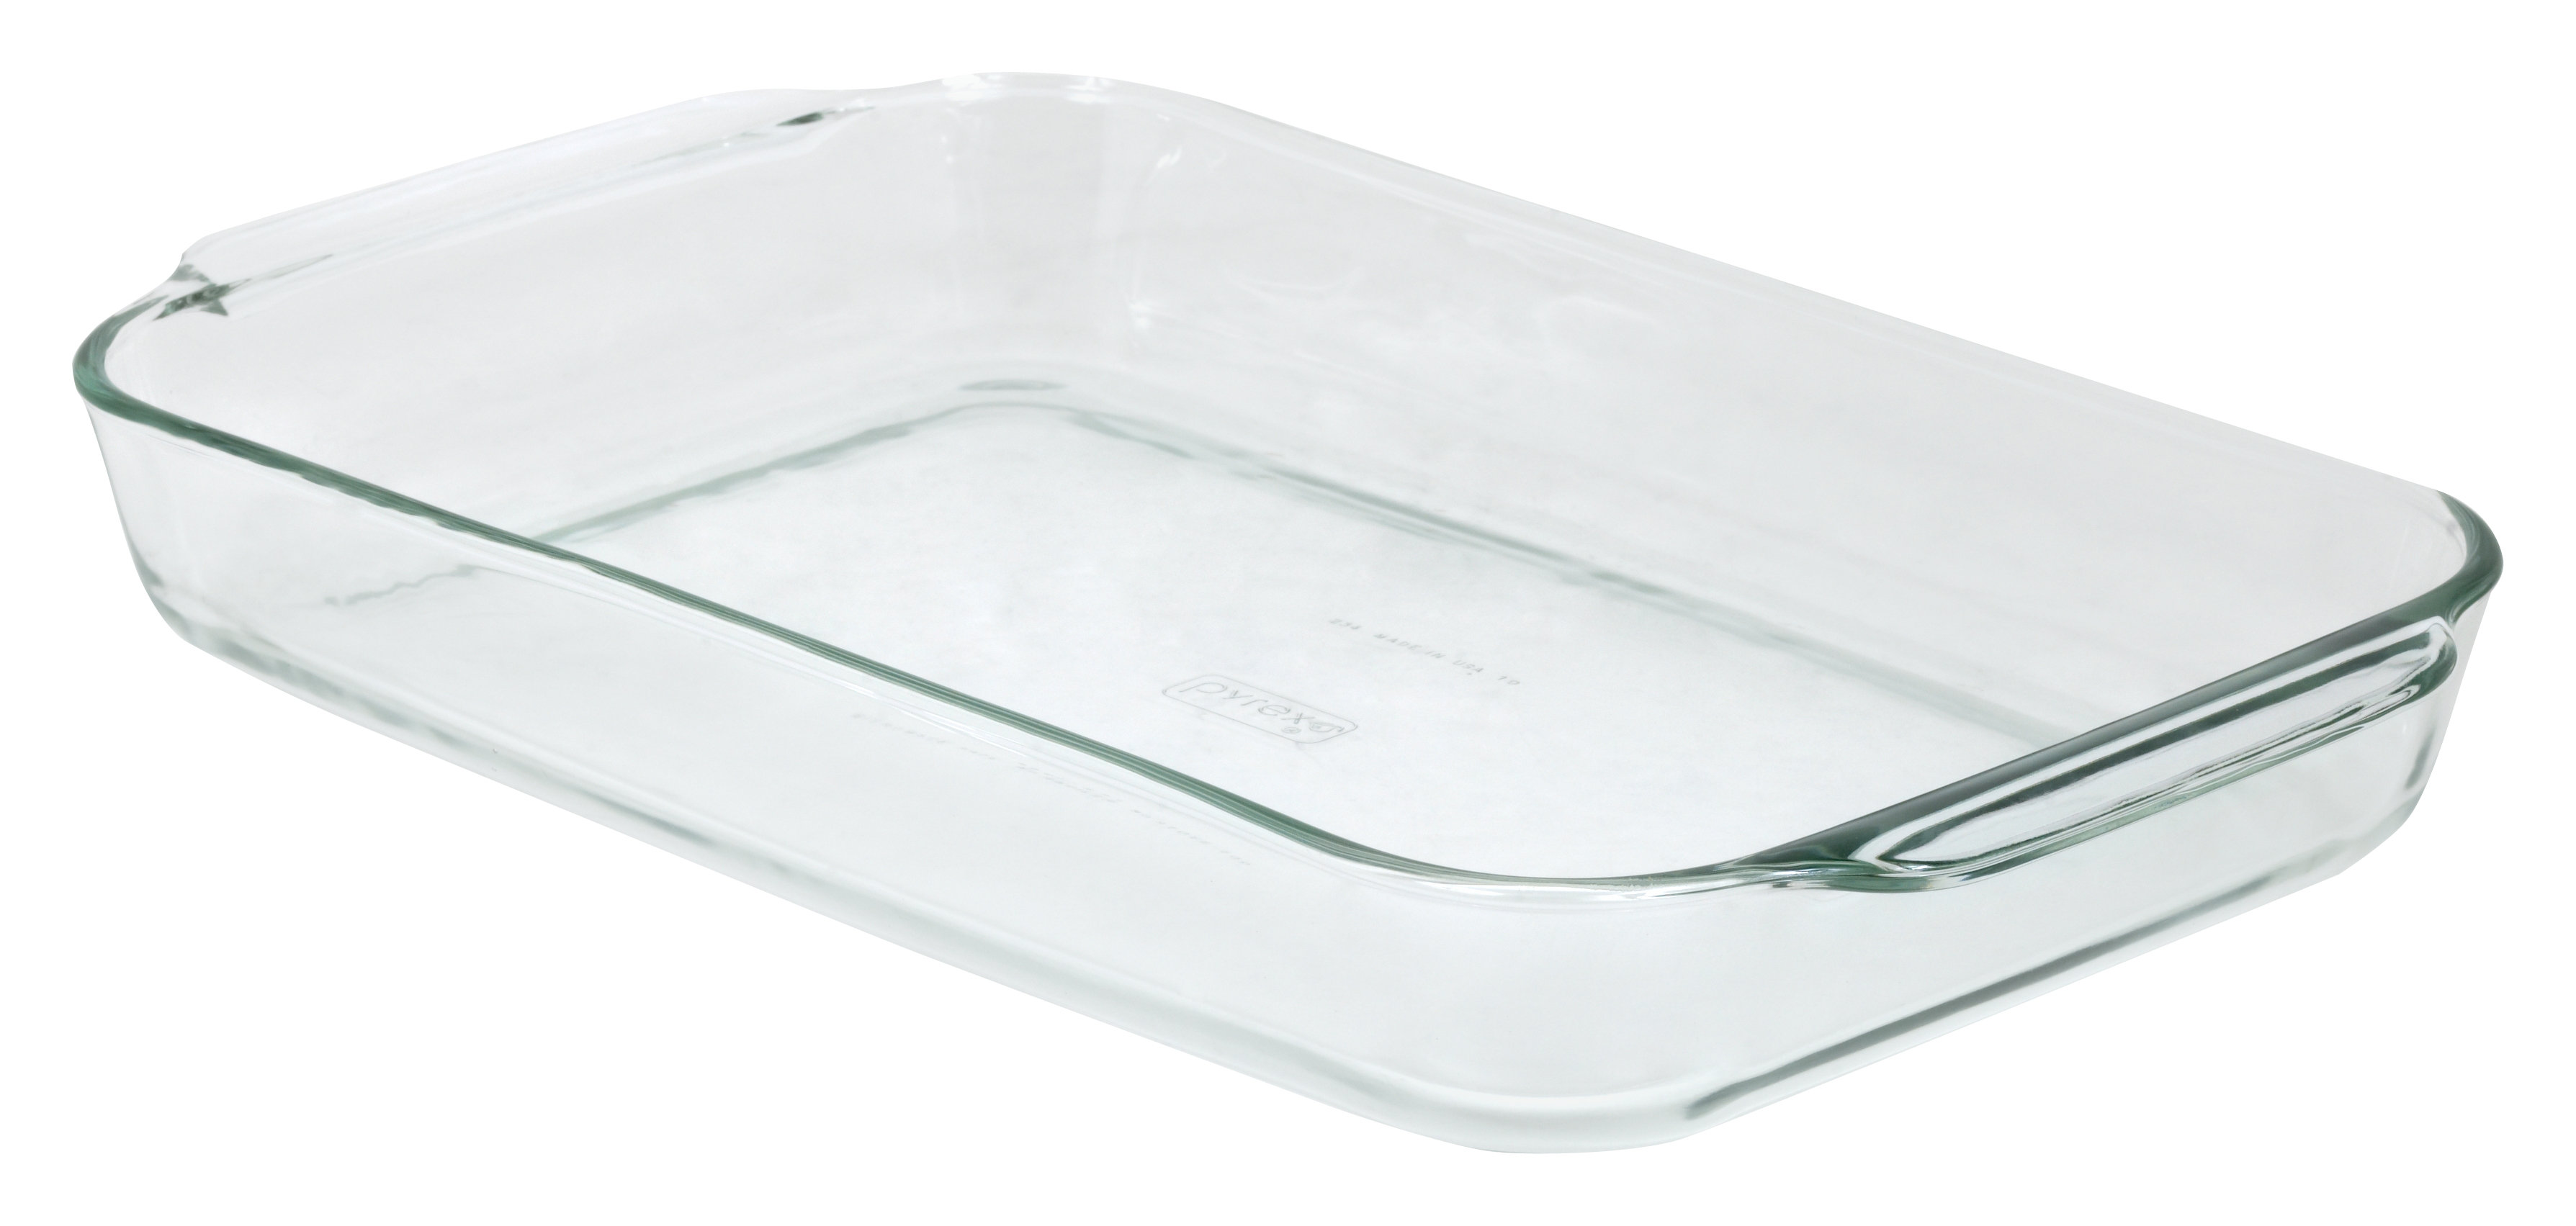 T me glass cook. Pyrex Glass. Pyrex Essentials 2.1 л. Glass Pyrex Baking dish. Противень для лазаньи.